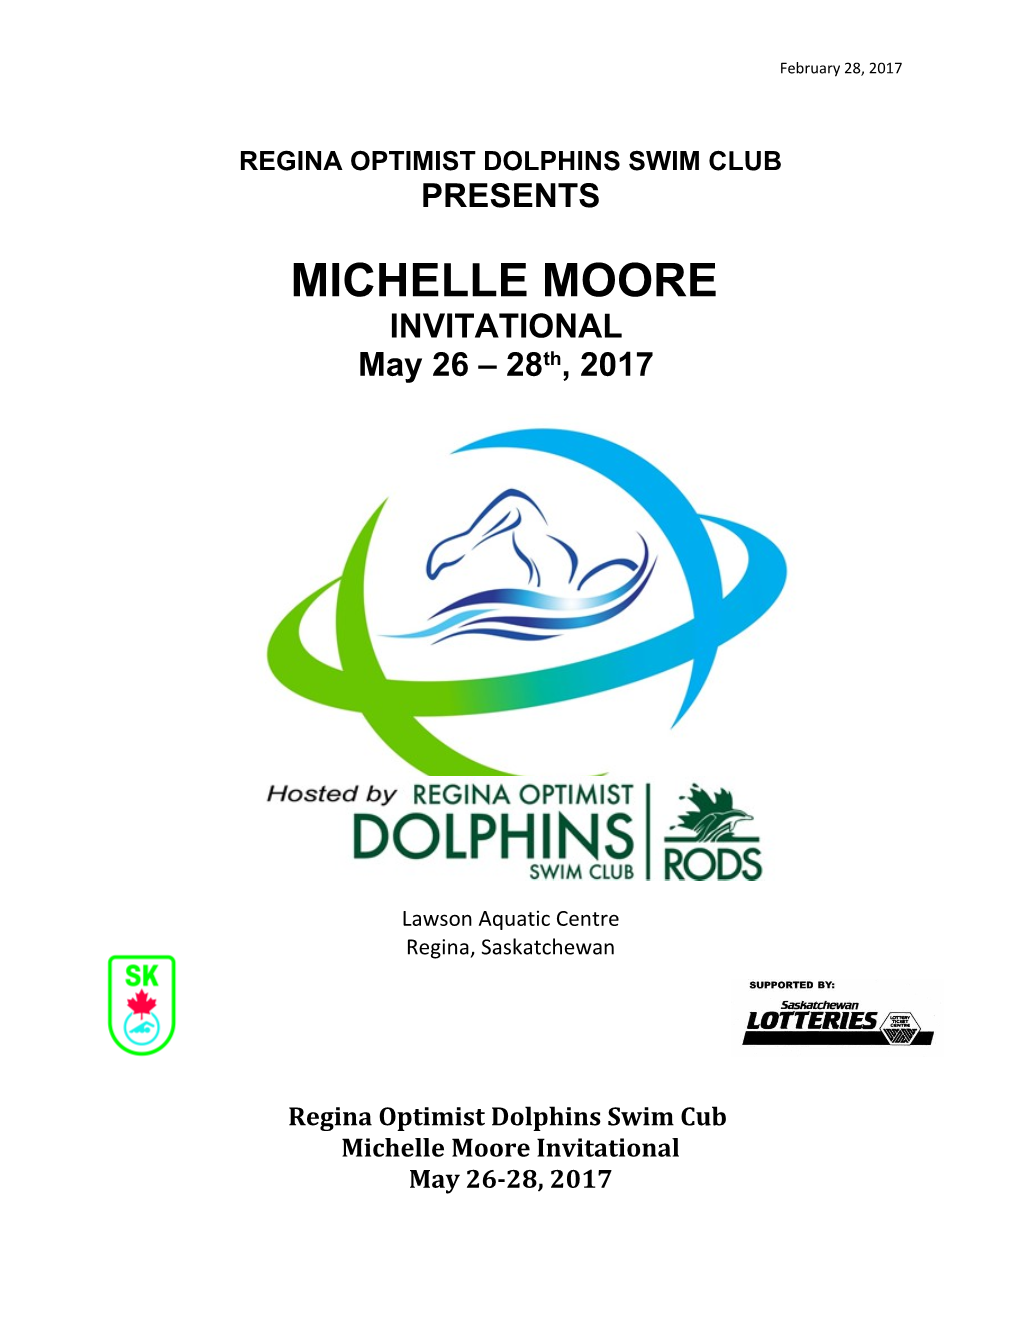 Regina Optimist Dolphins Swim Club